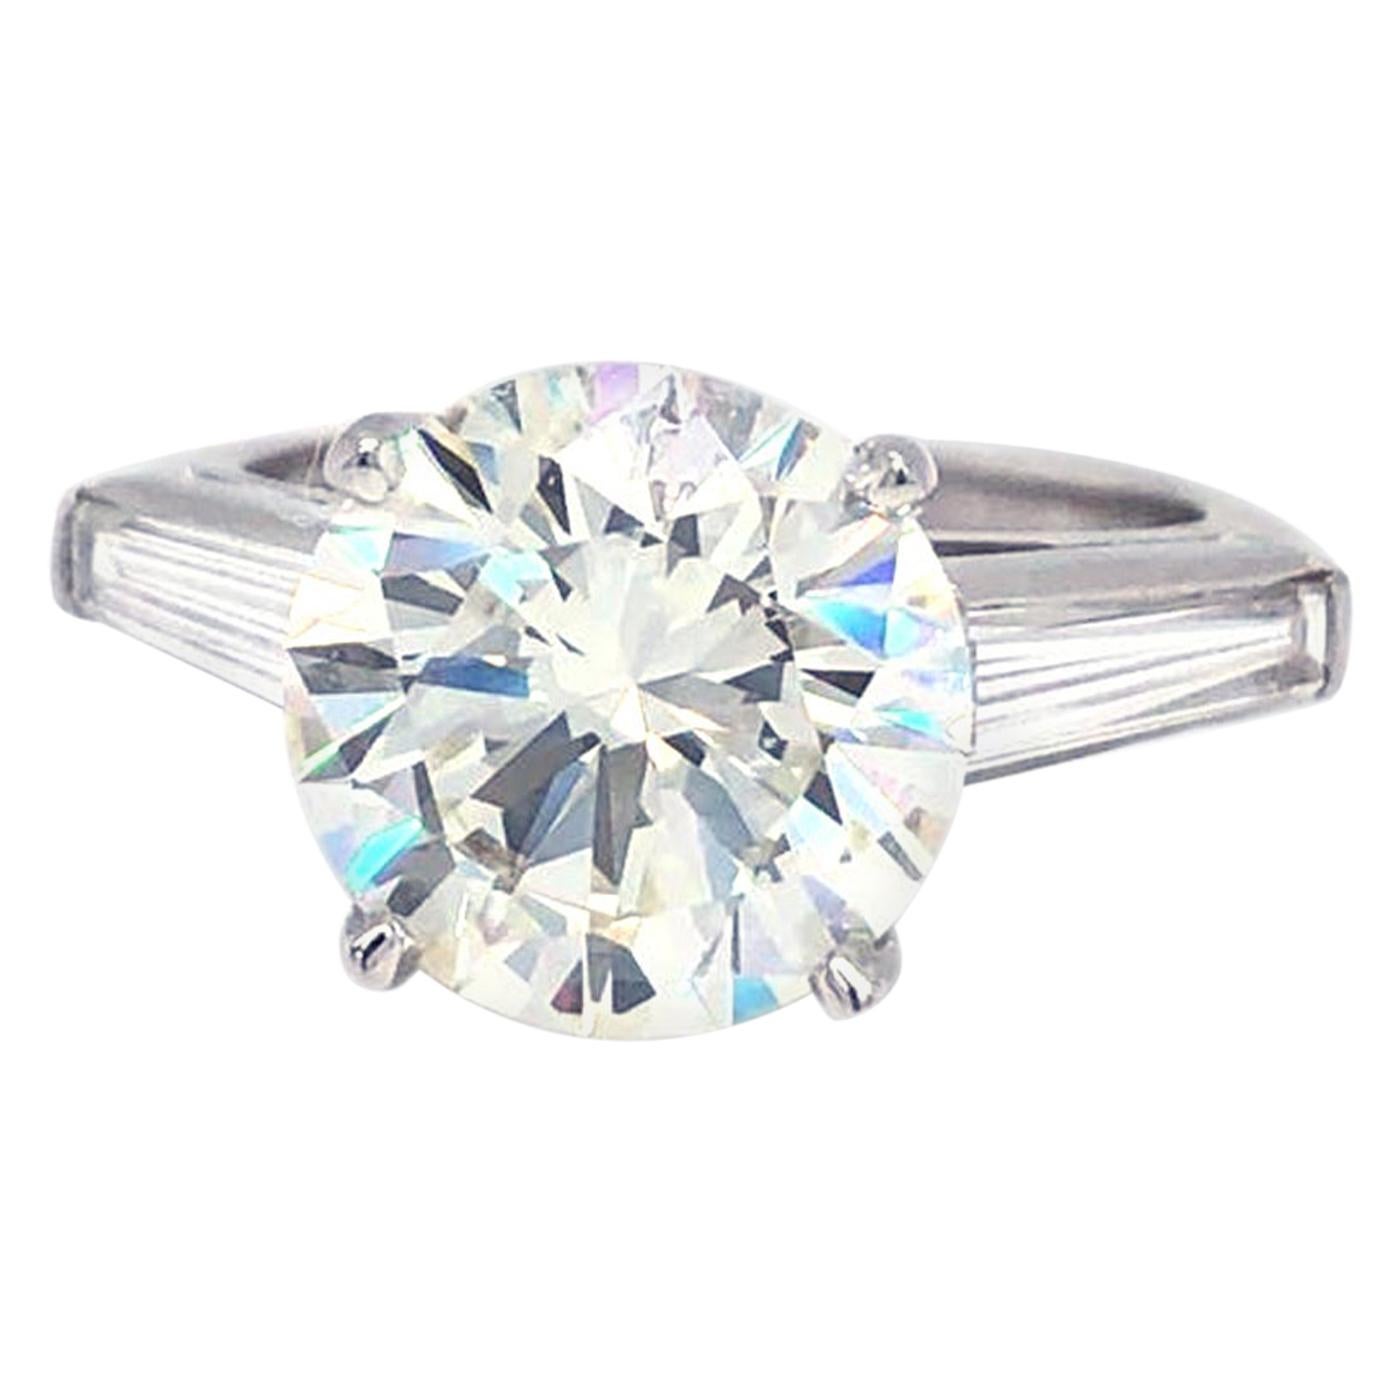 4.03 Carat GIA Certified Round Brilliant Cut Diamond Platinum Engagement Ring